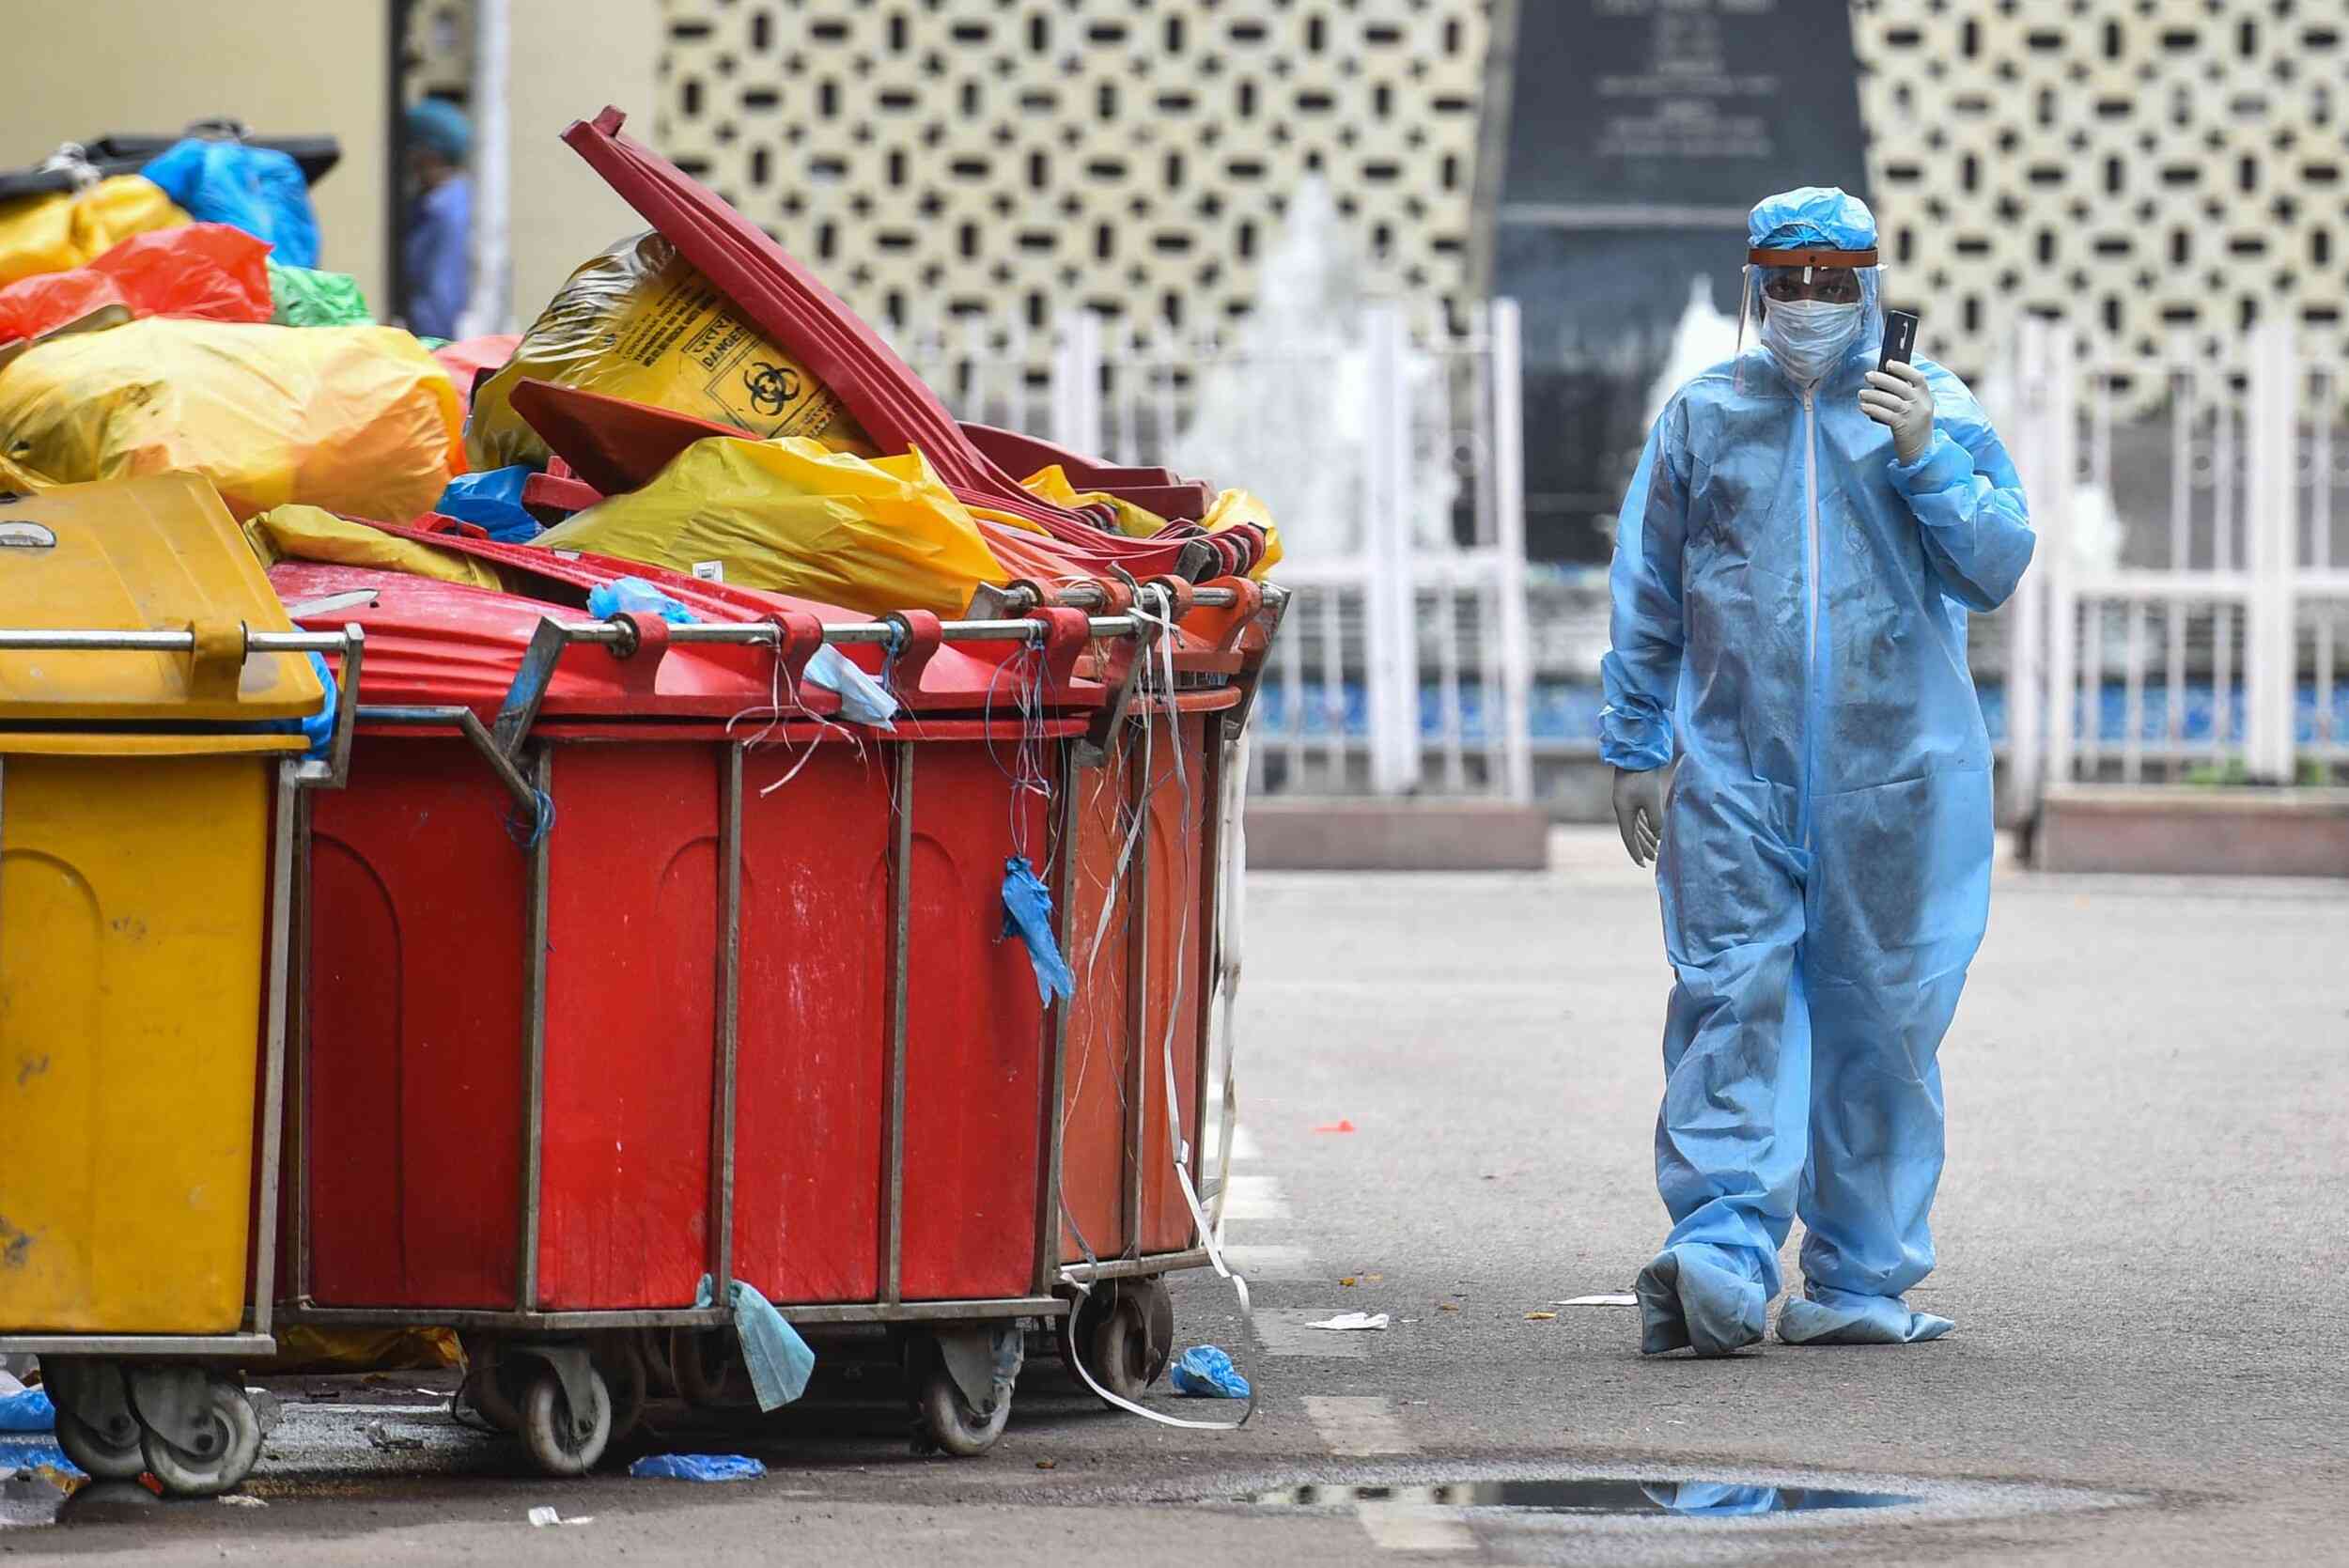 ΠΟΥ-Covid-19: Τεράστιοι όγκοι νοσοκομειακών αποβλήτων από τον κορονοϊό απειλούν τη δημόσια υγεία